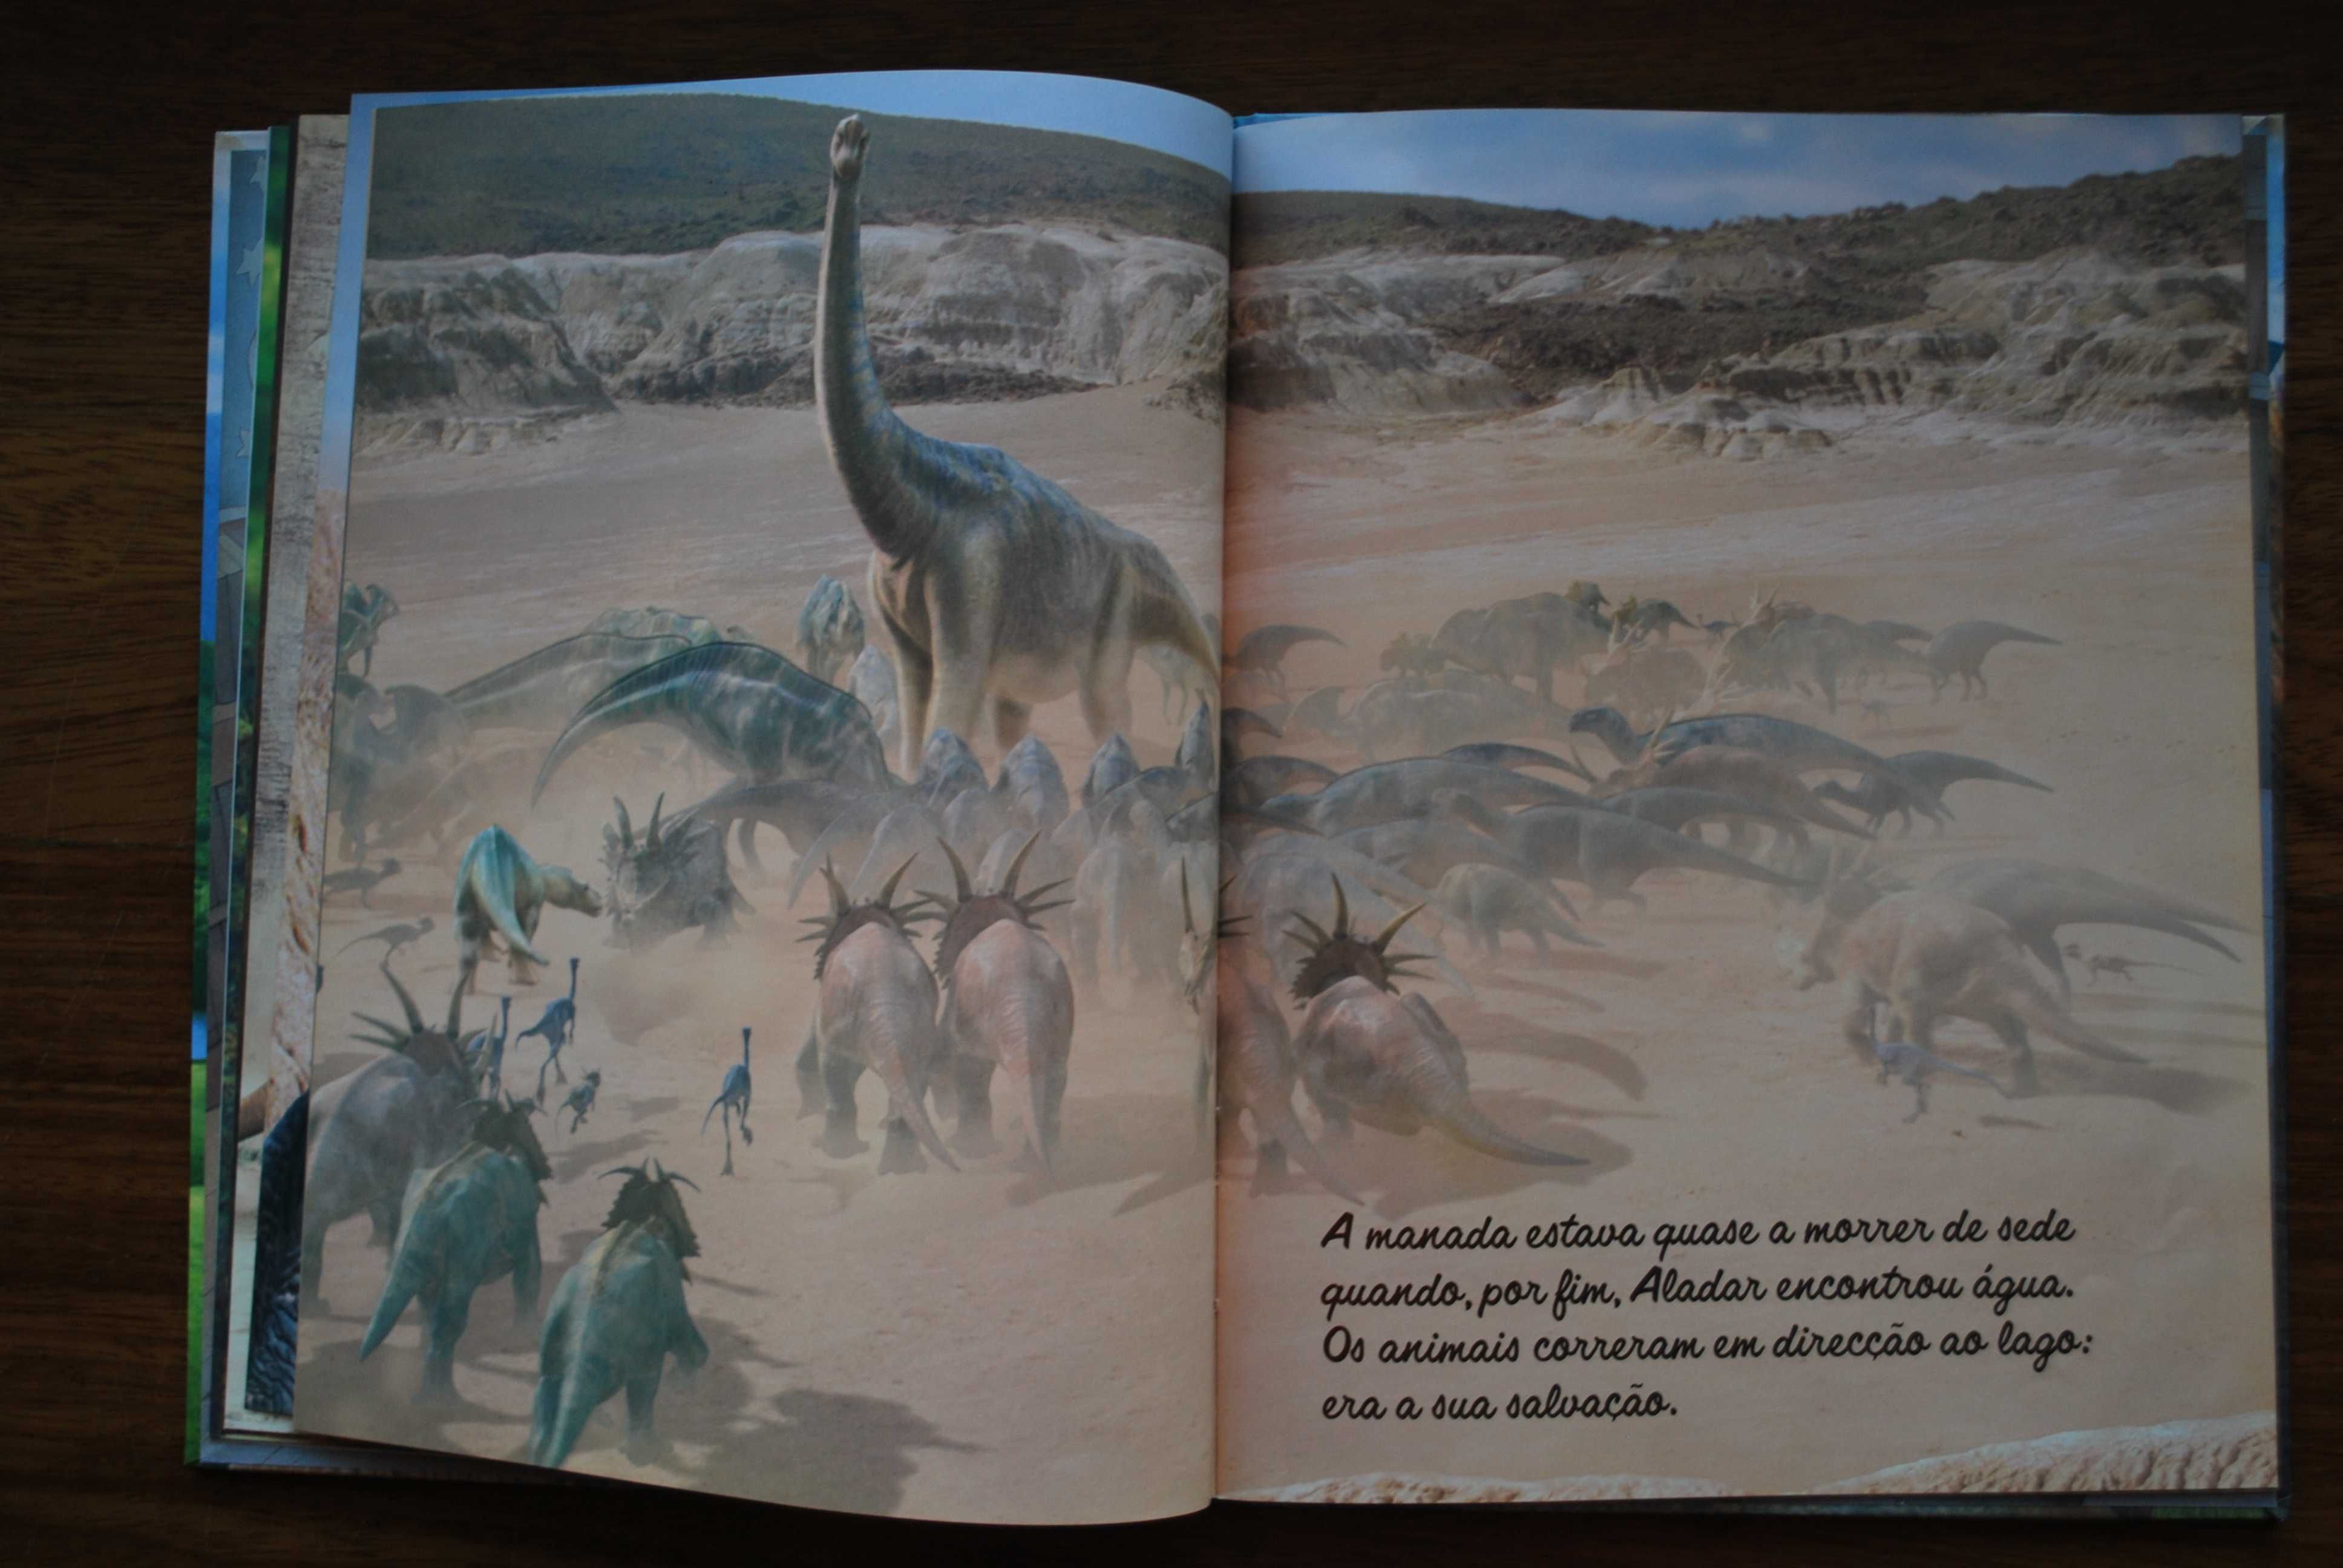 Dinossauro (O Meu Mundo Disney)